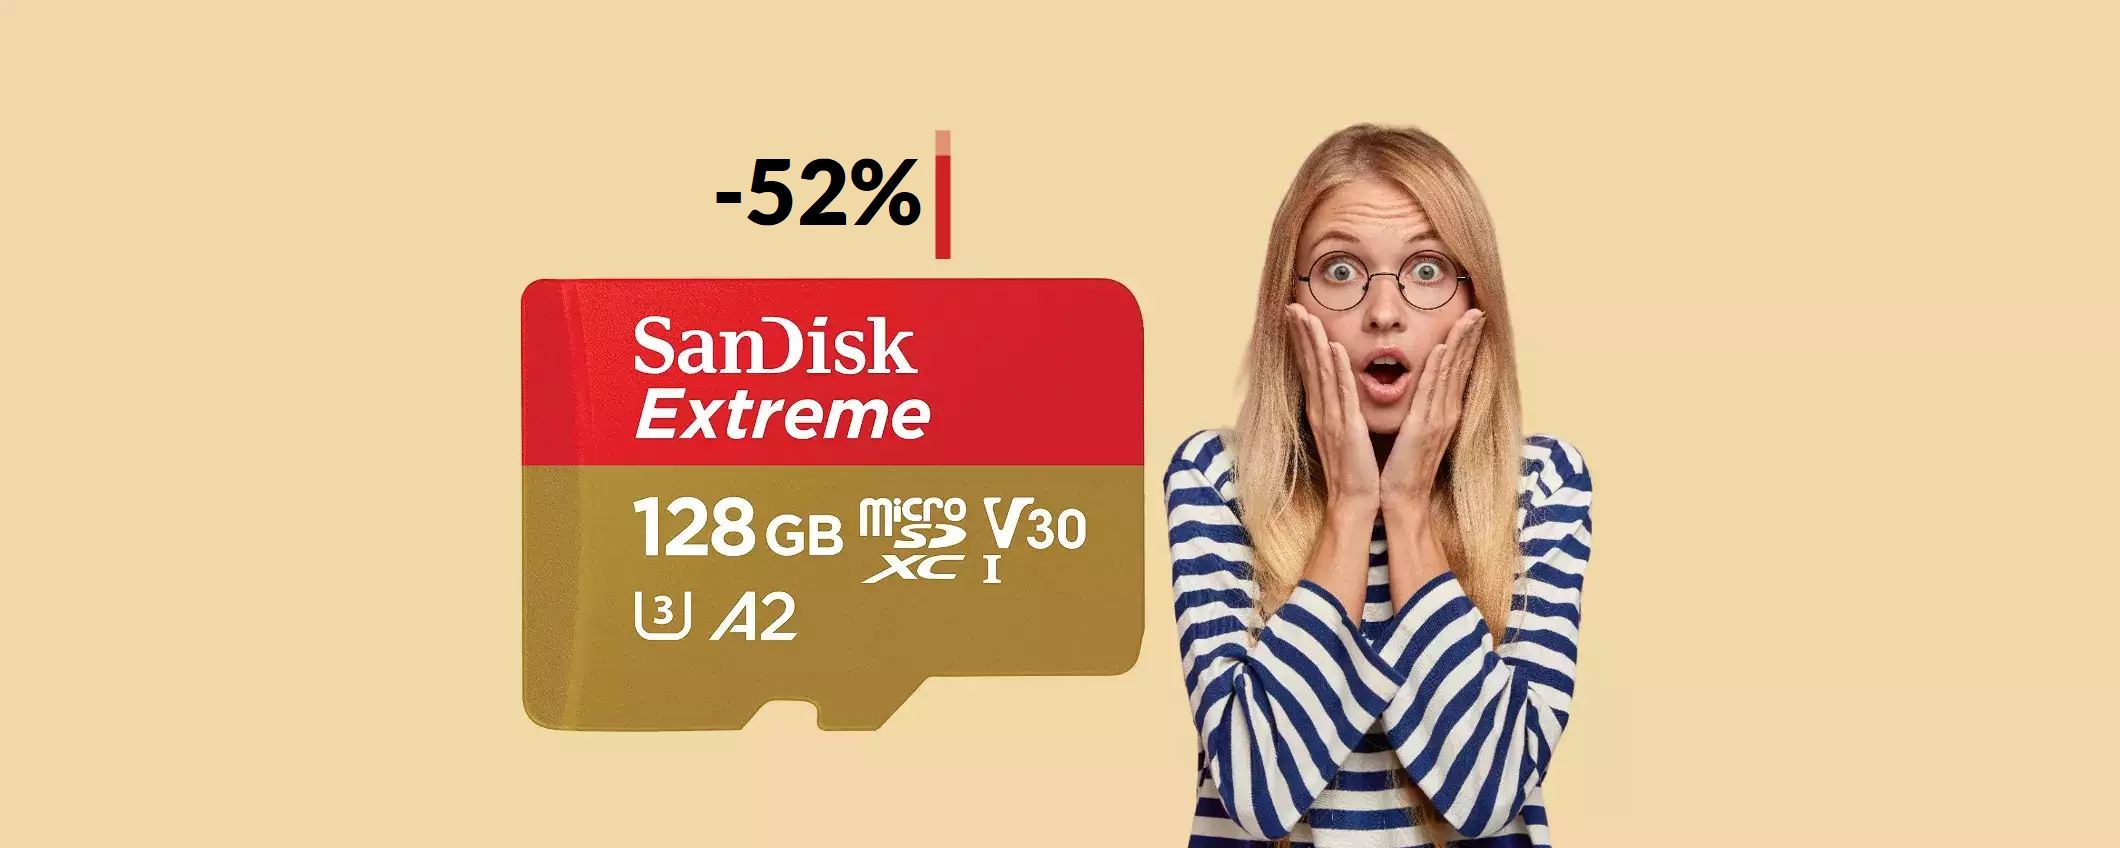 MicroSD SanDisk 128GB a meno di METÀ prezzo: già tua con 22€